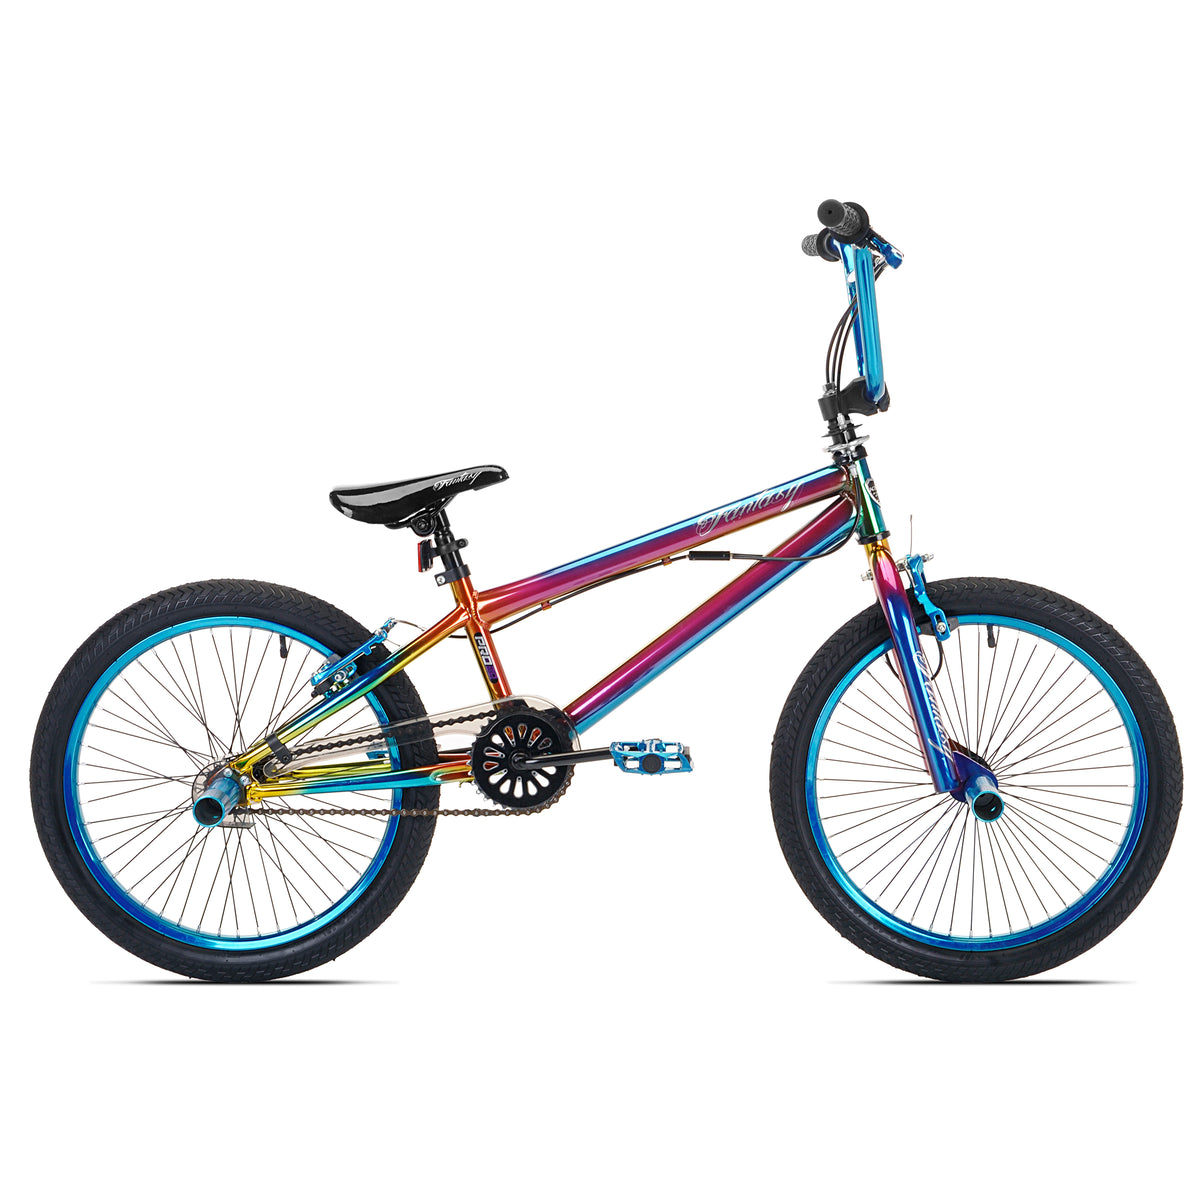 20" Kent Fantasy | BMX Bike for Kids Ages 7-13